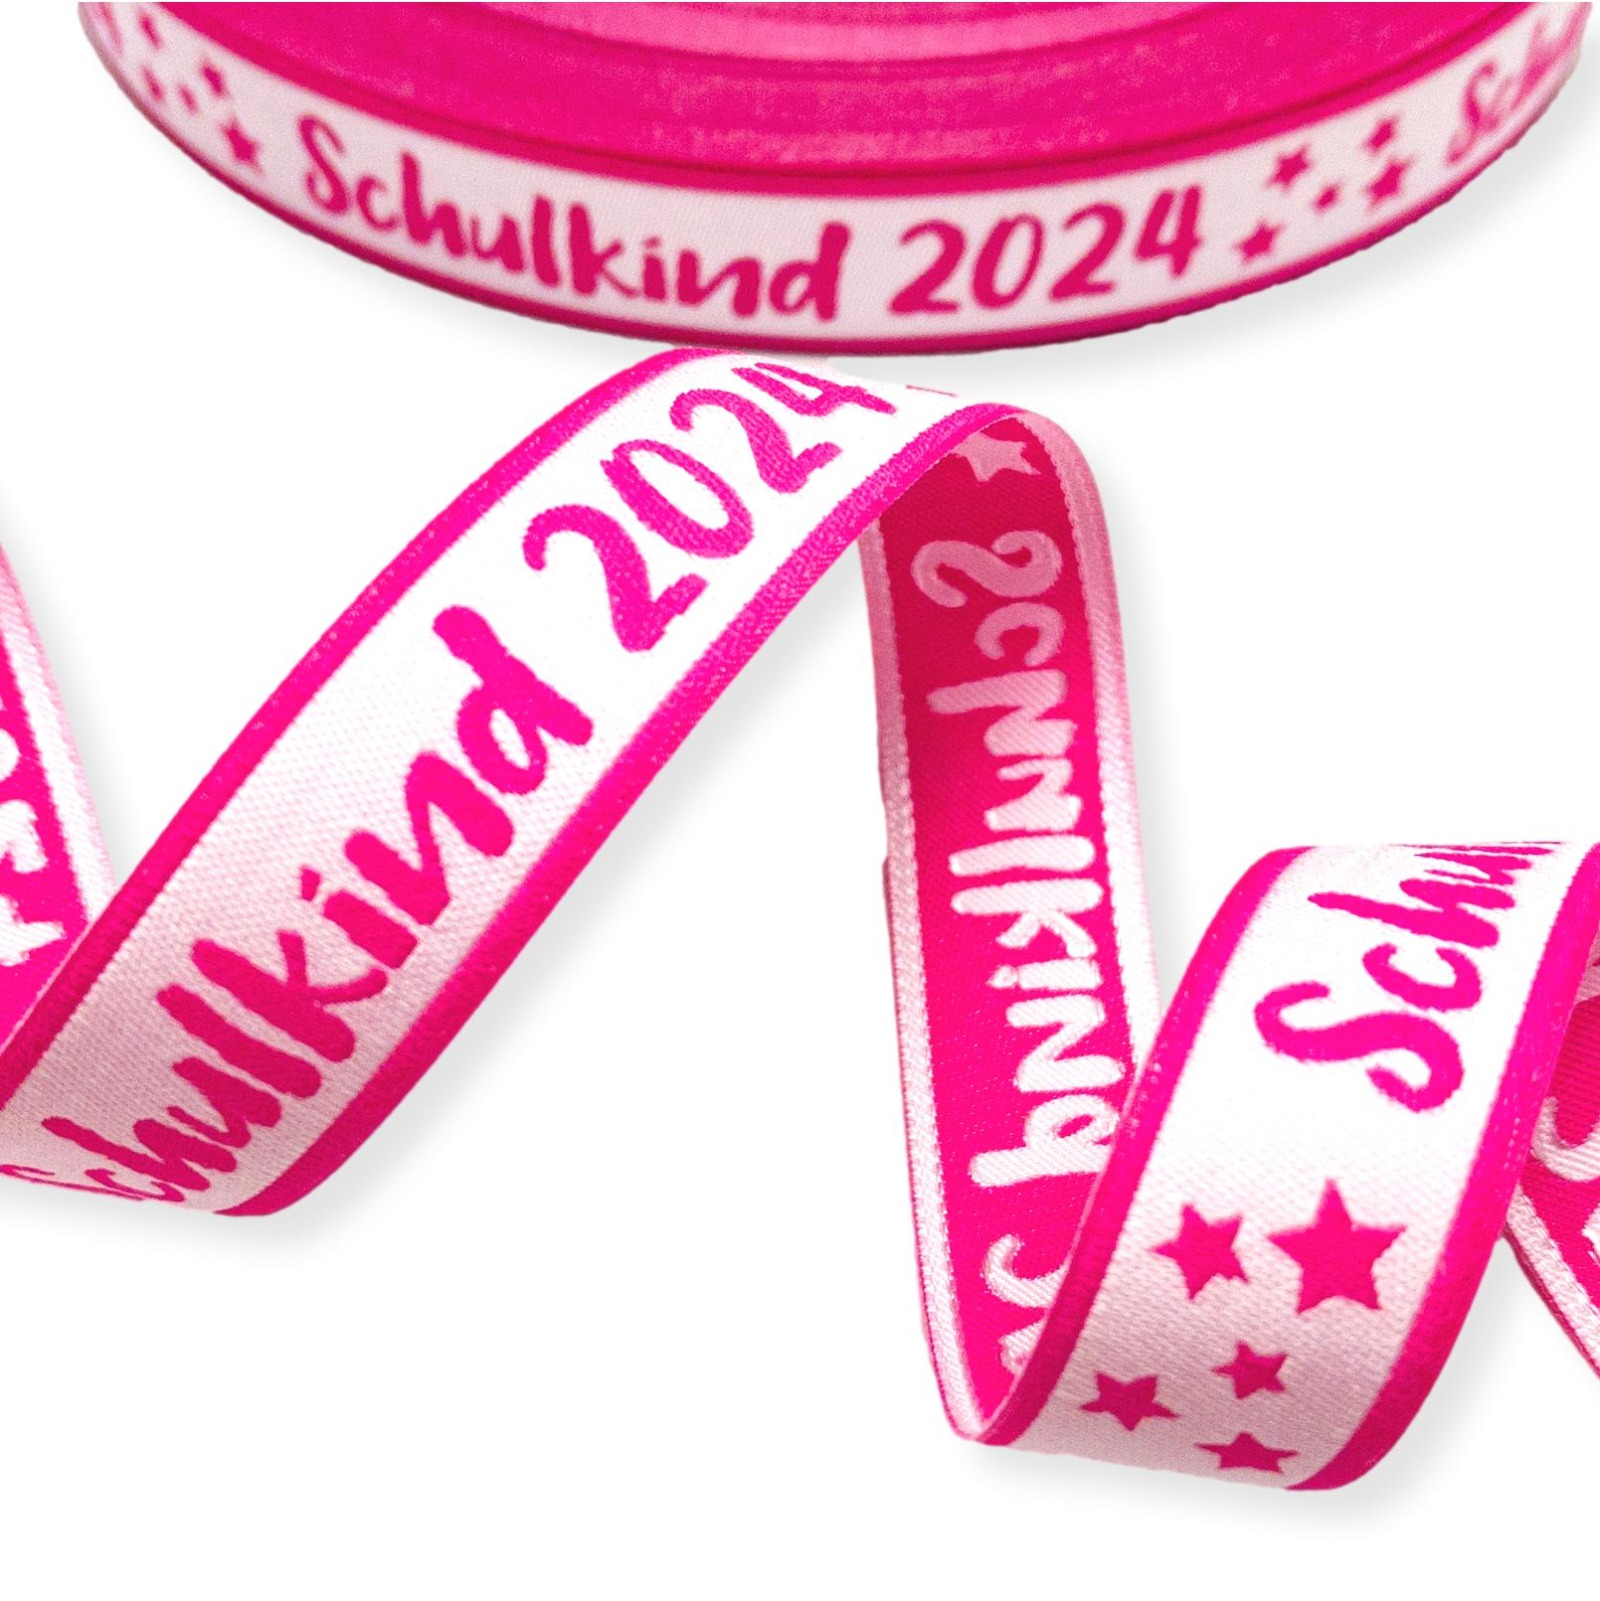 Webband Schulkind 2024 in pink für Schultüten und Einschulungsgeschenke 17 mm breit 3